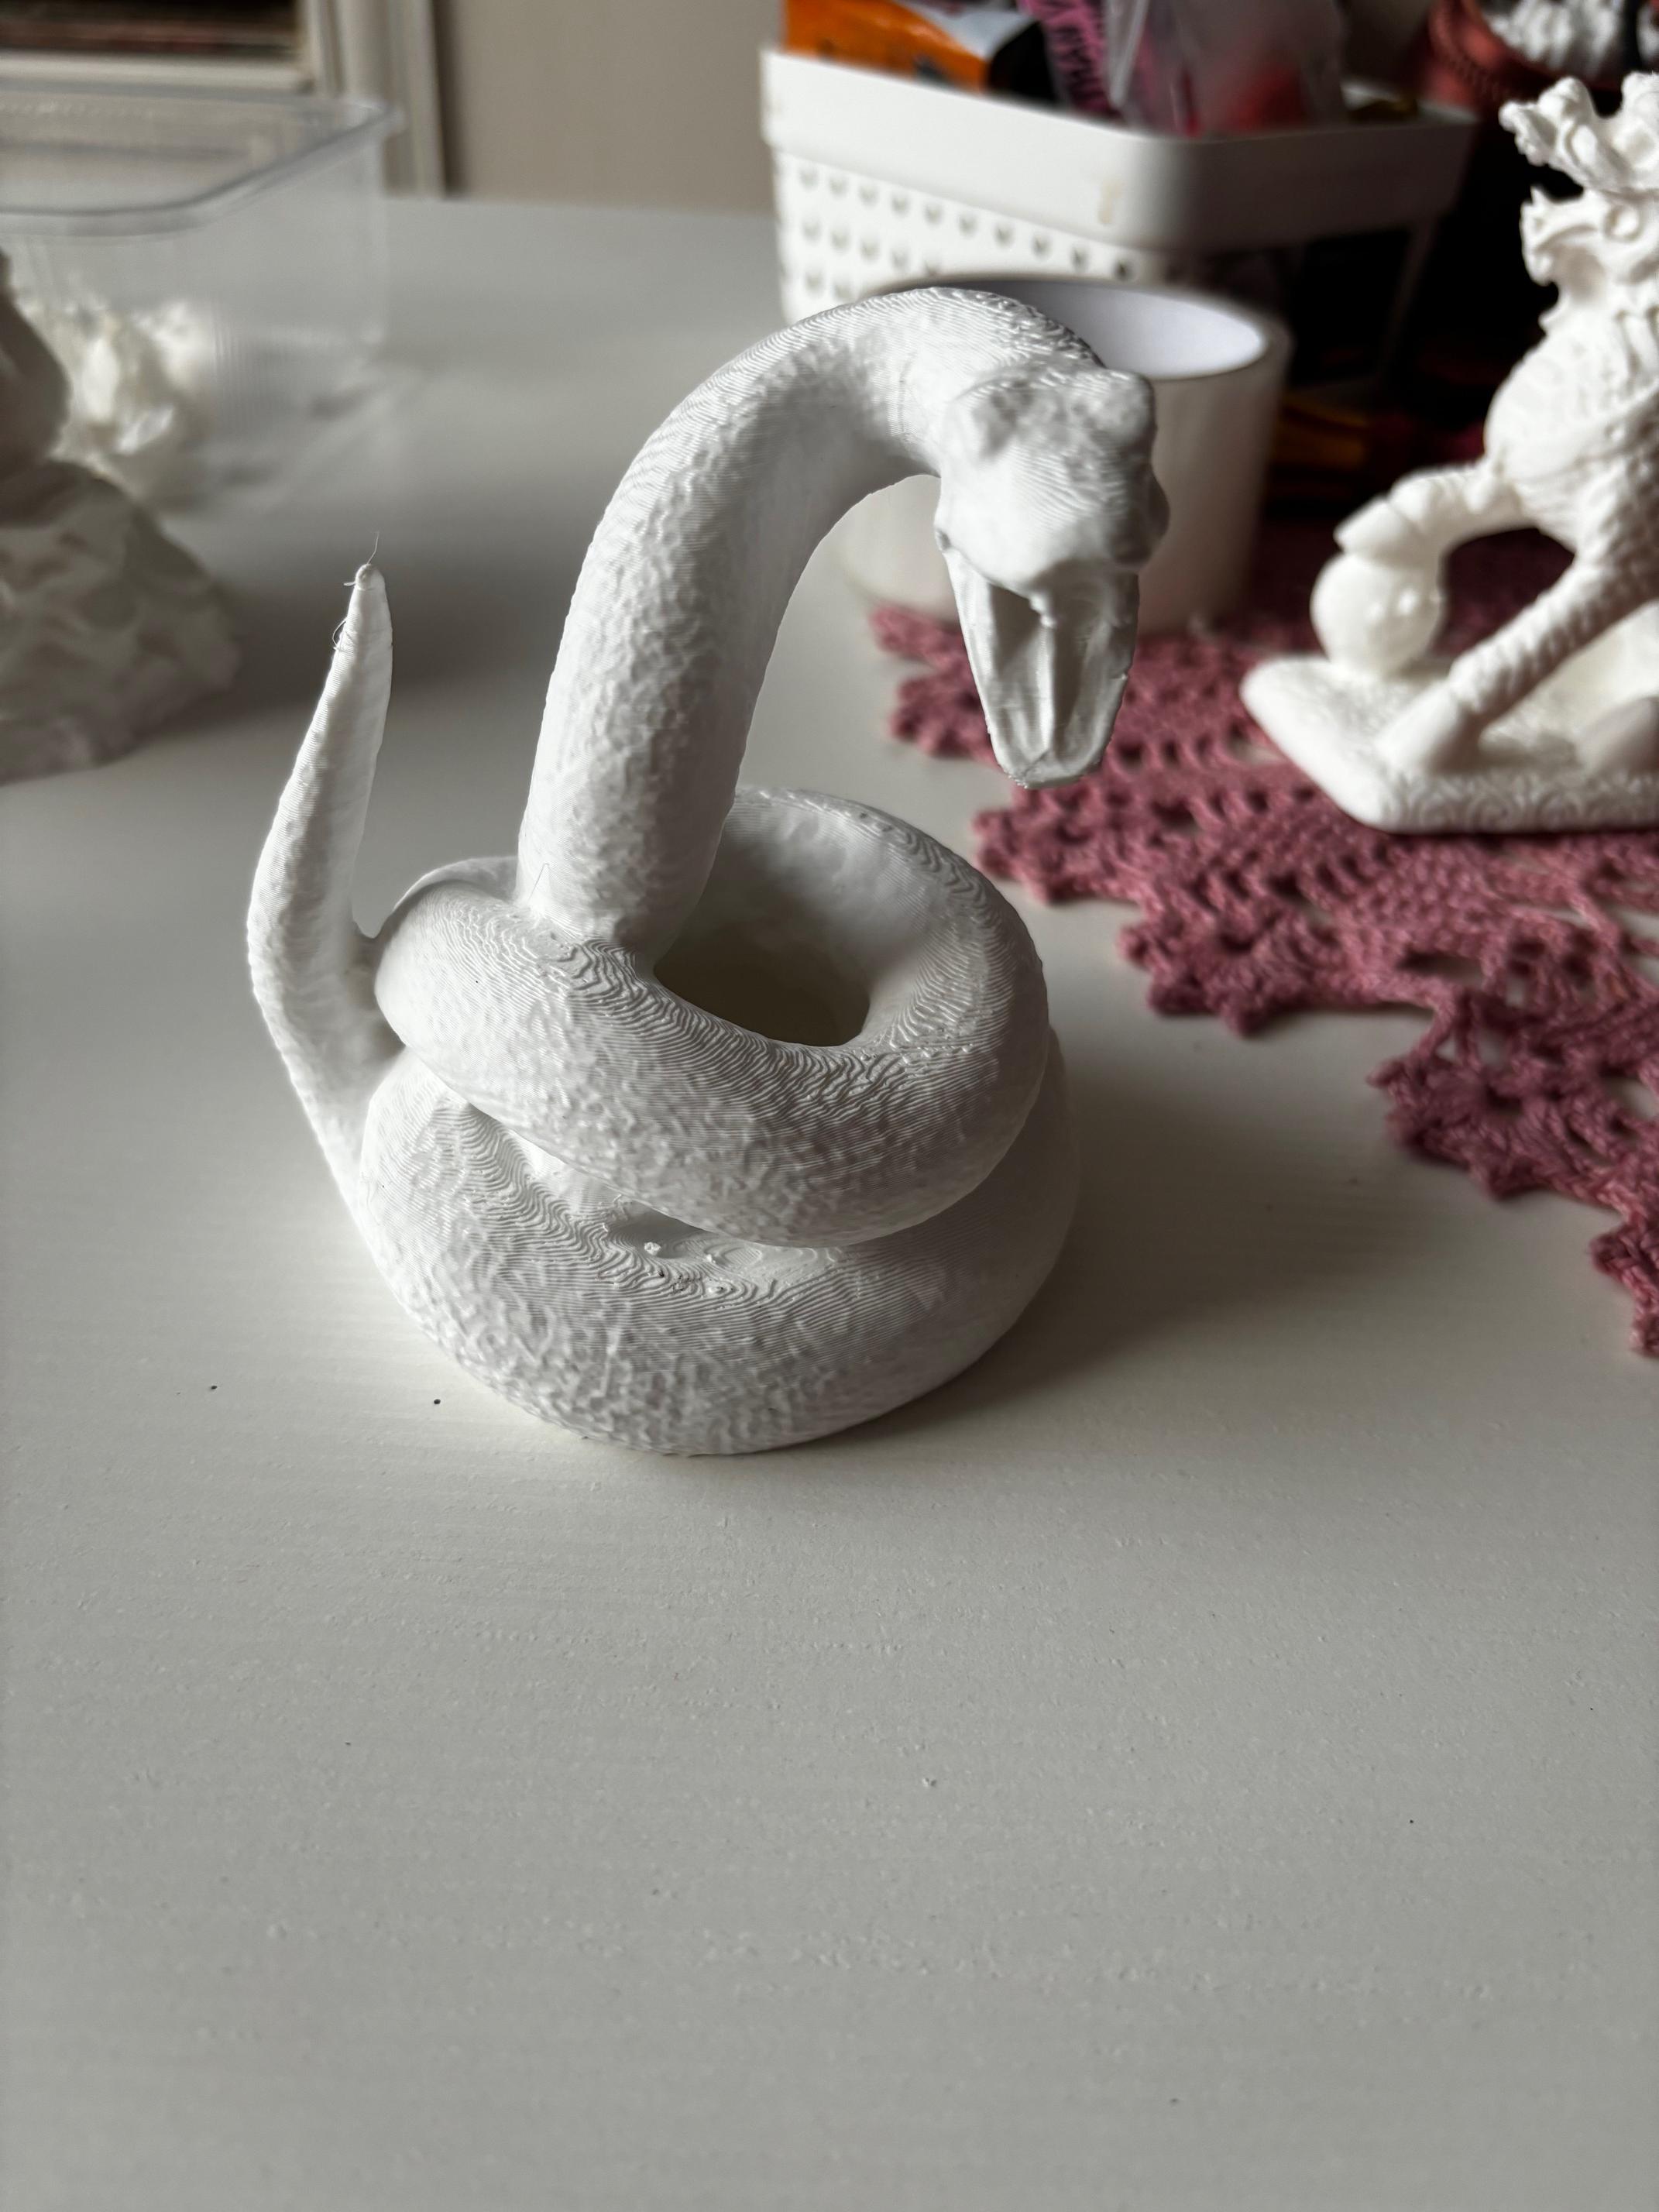 Sculpture of a snake 3d model